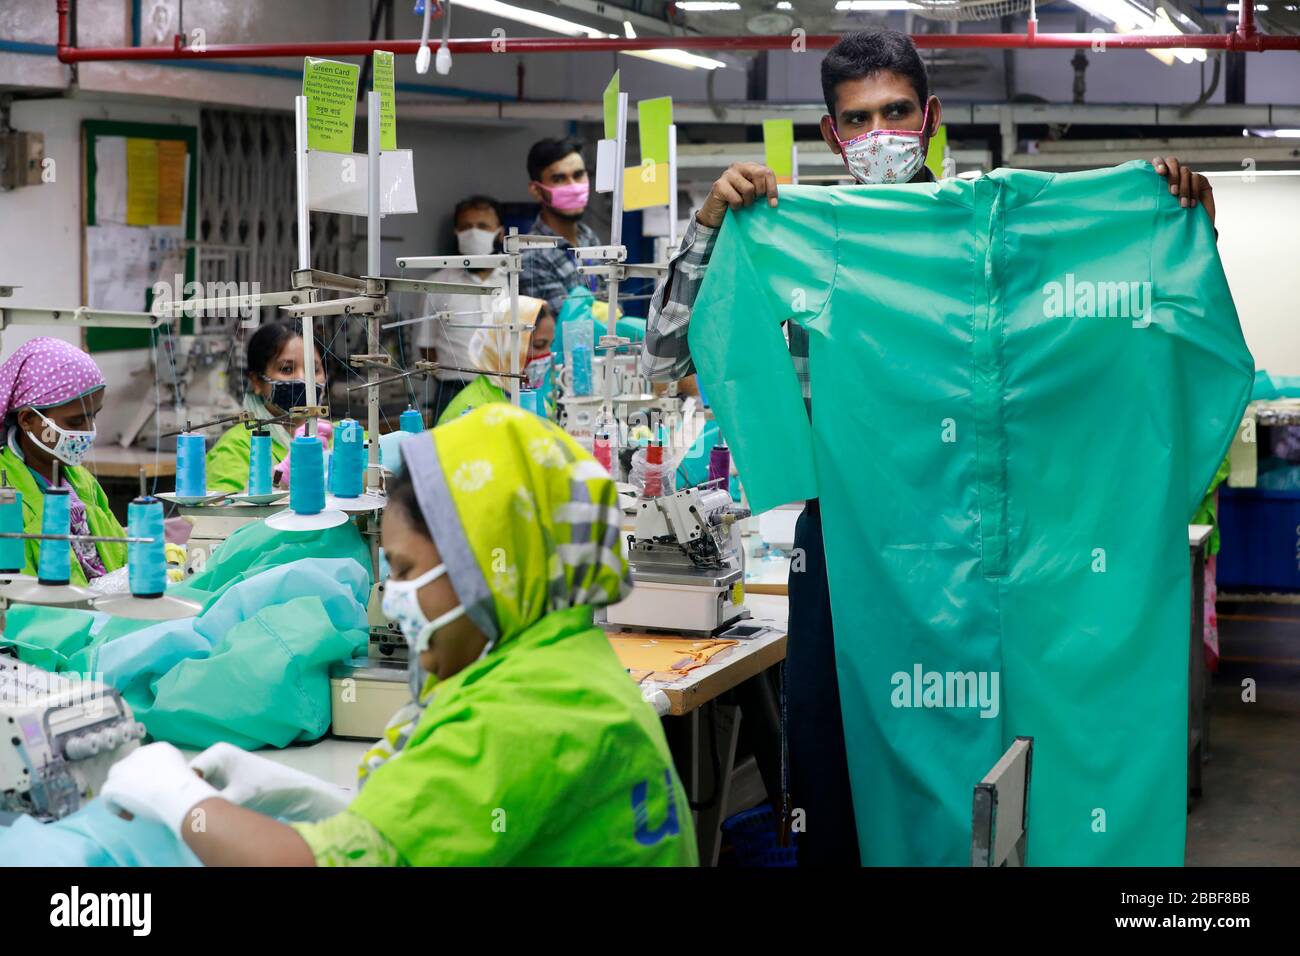 Dhaka, Bangladesh - 31 mars 2020: Travailleurs produisant des équipements de protection individuelle (EPI) pour les professionnels de la santé dans une usine de vêtements du groupe Urmi Banque D'Images